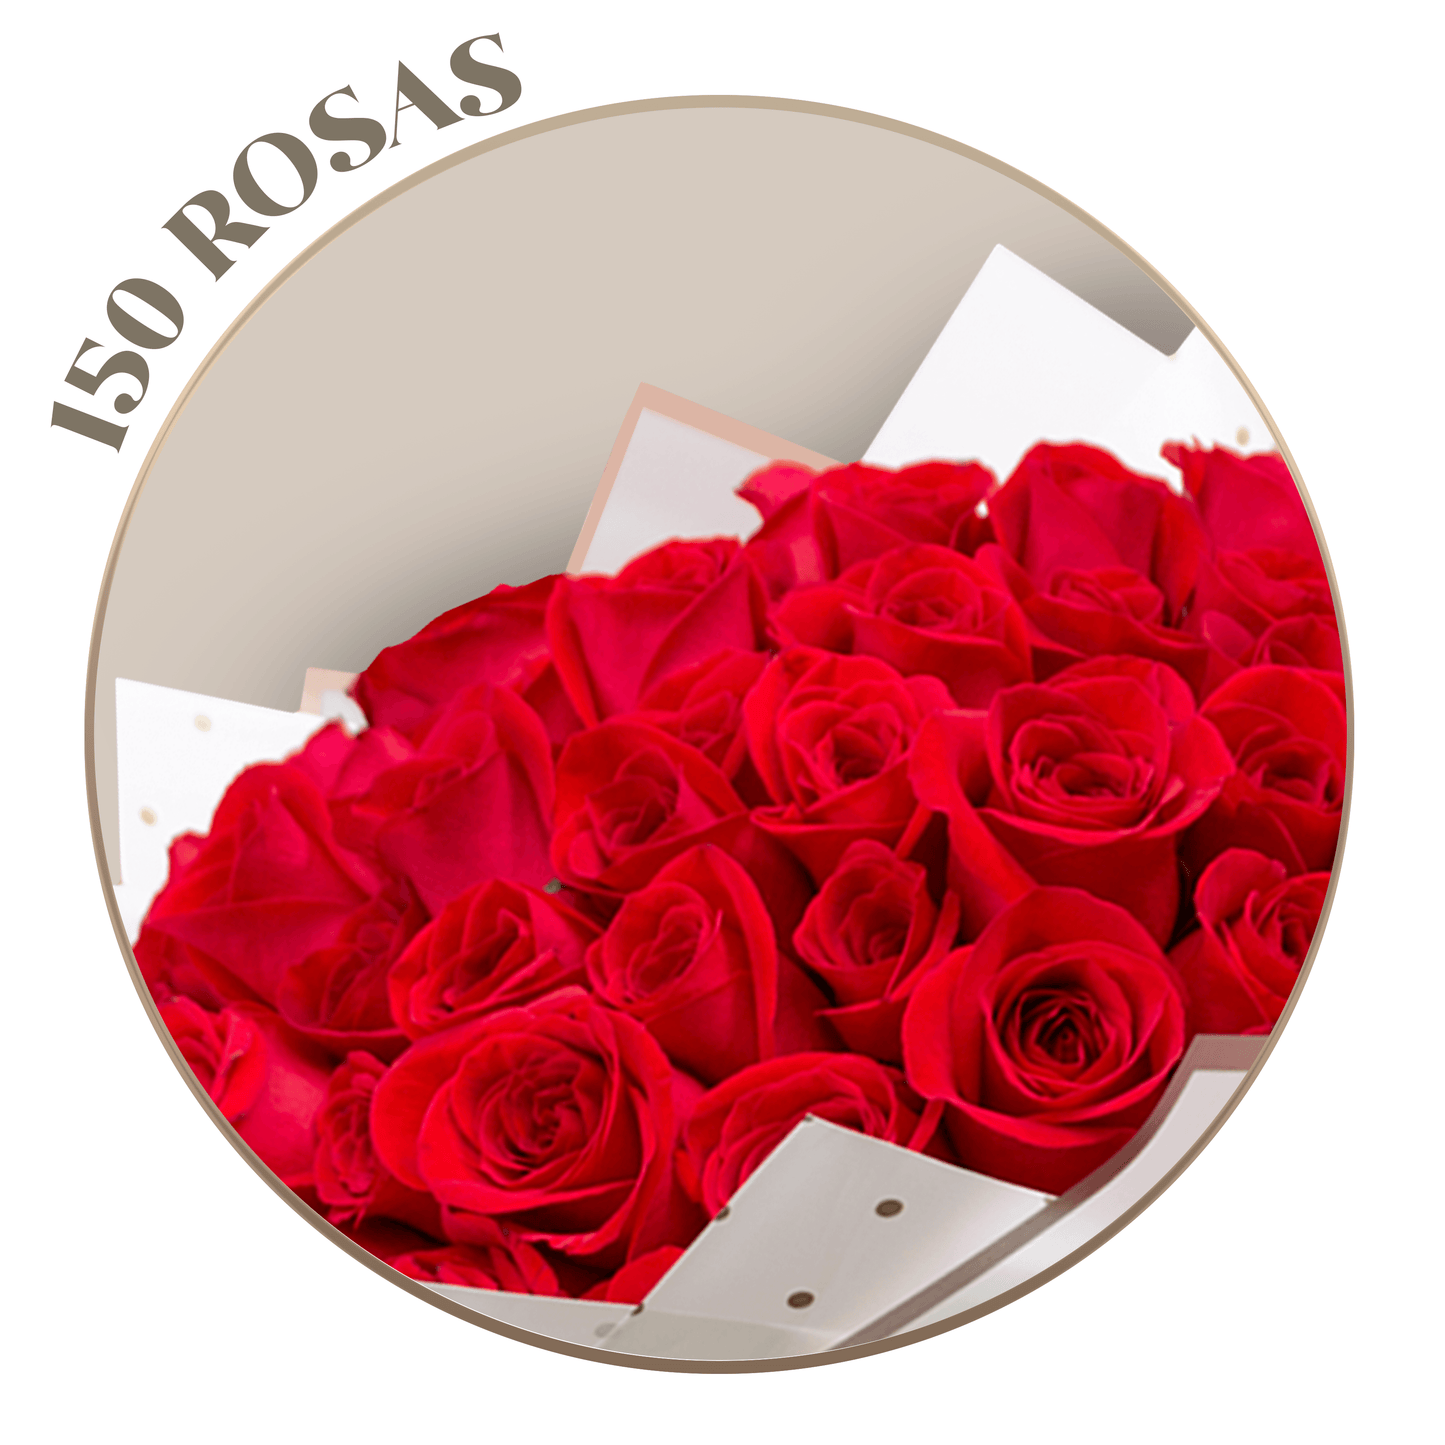 150 Rosas Rojas en ramillete con papel blanco Ponch y Caprico a domicilio CDMX